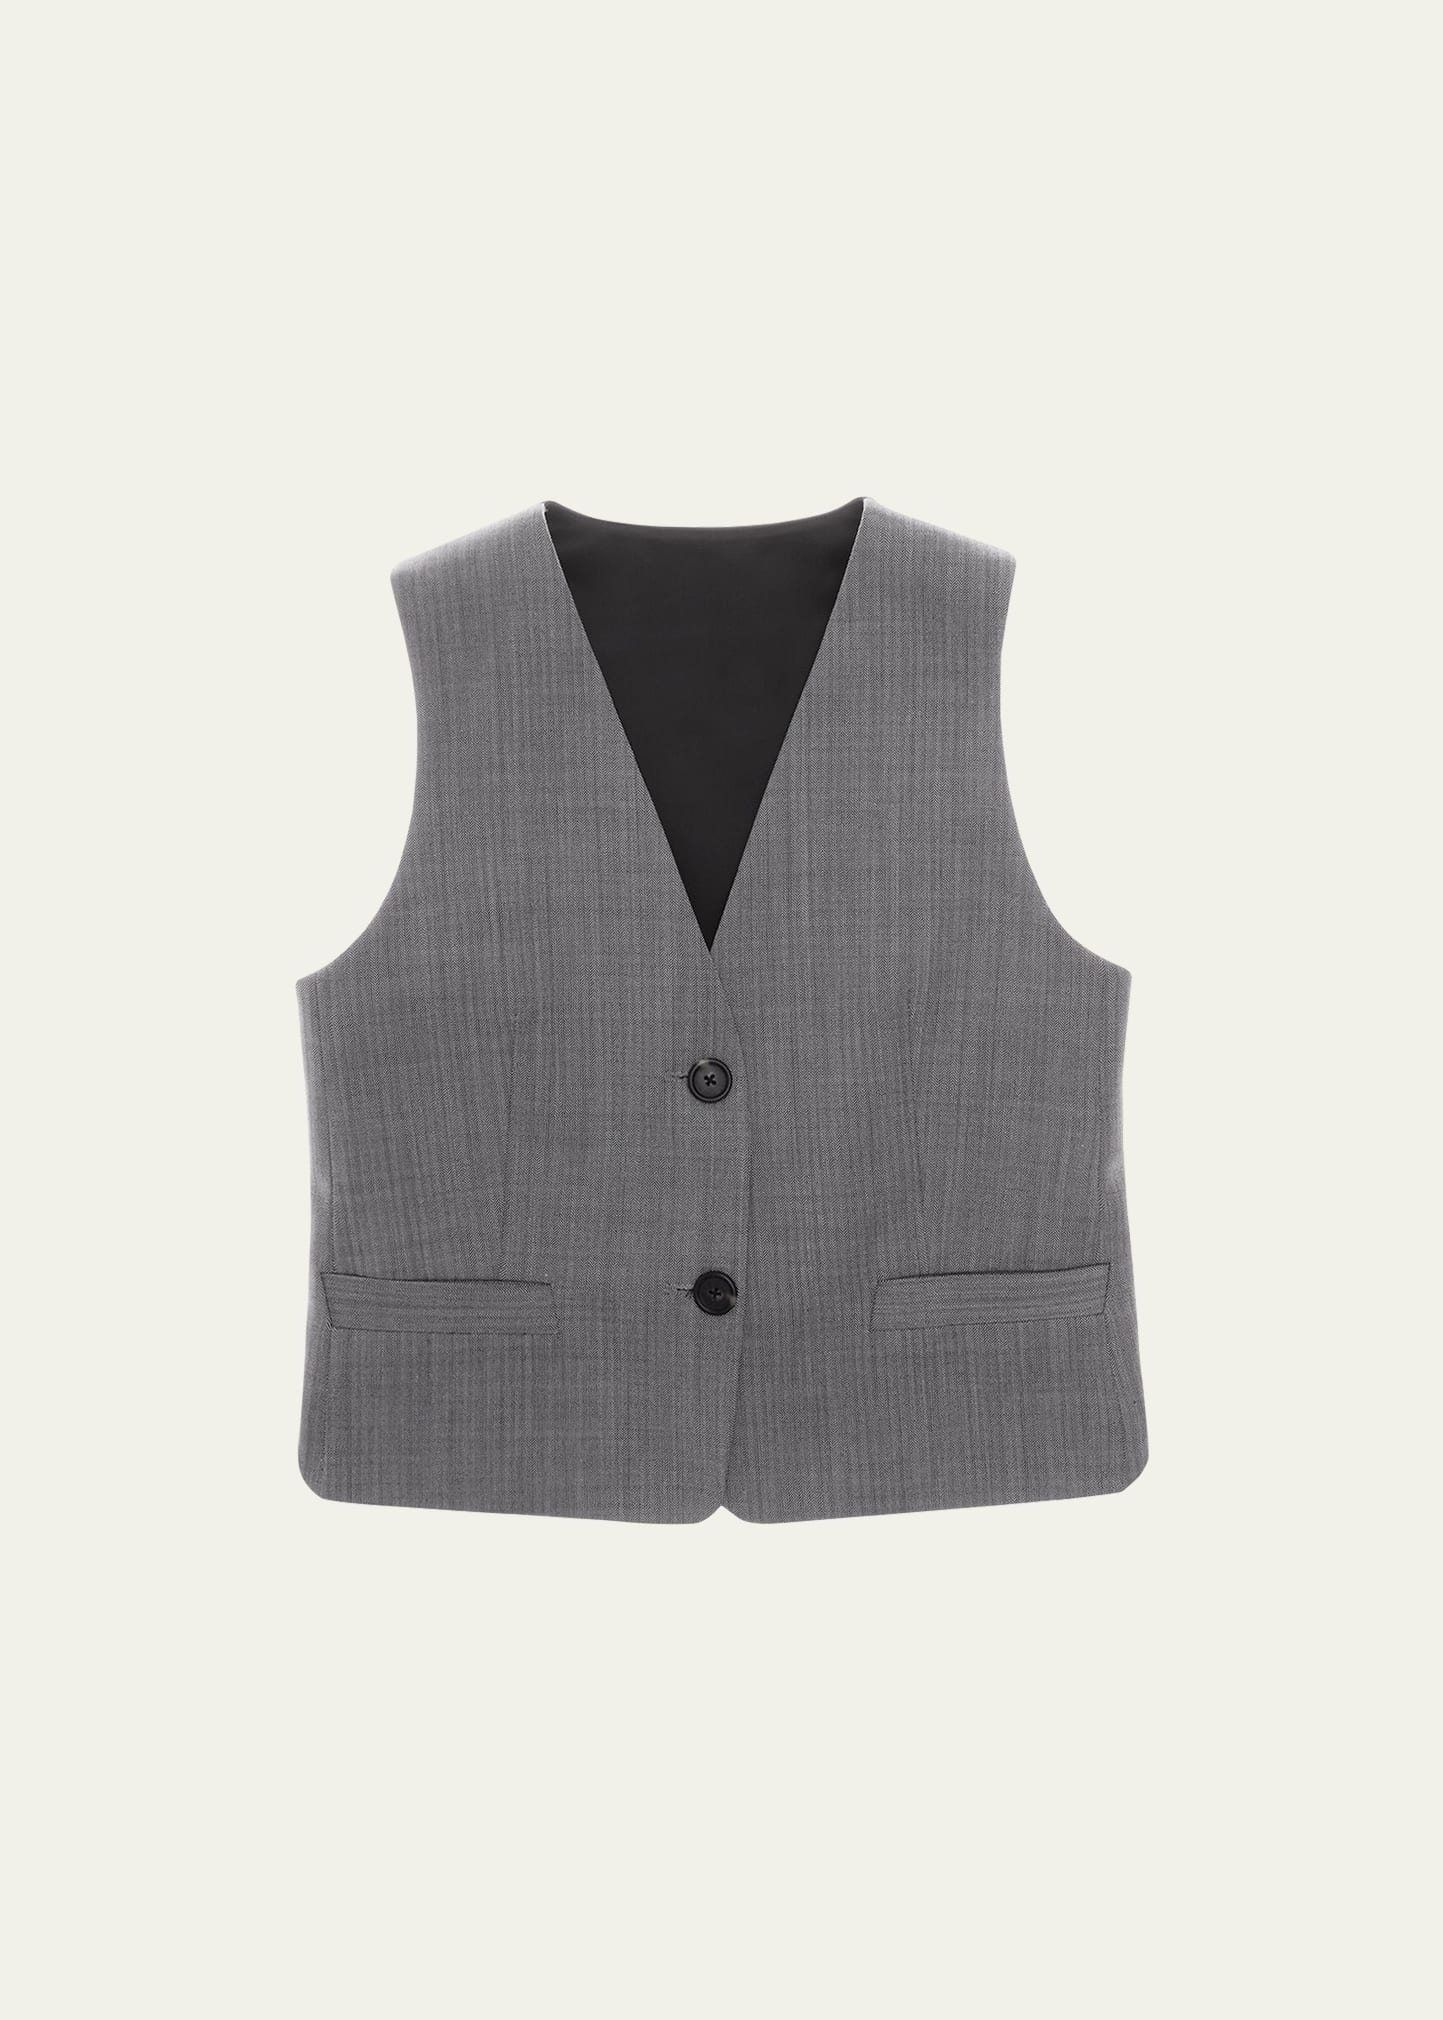 Helmut Lang Herringbone Tuxedo Vest In Blk Wht ml